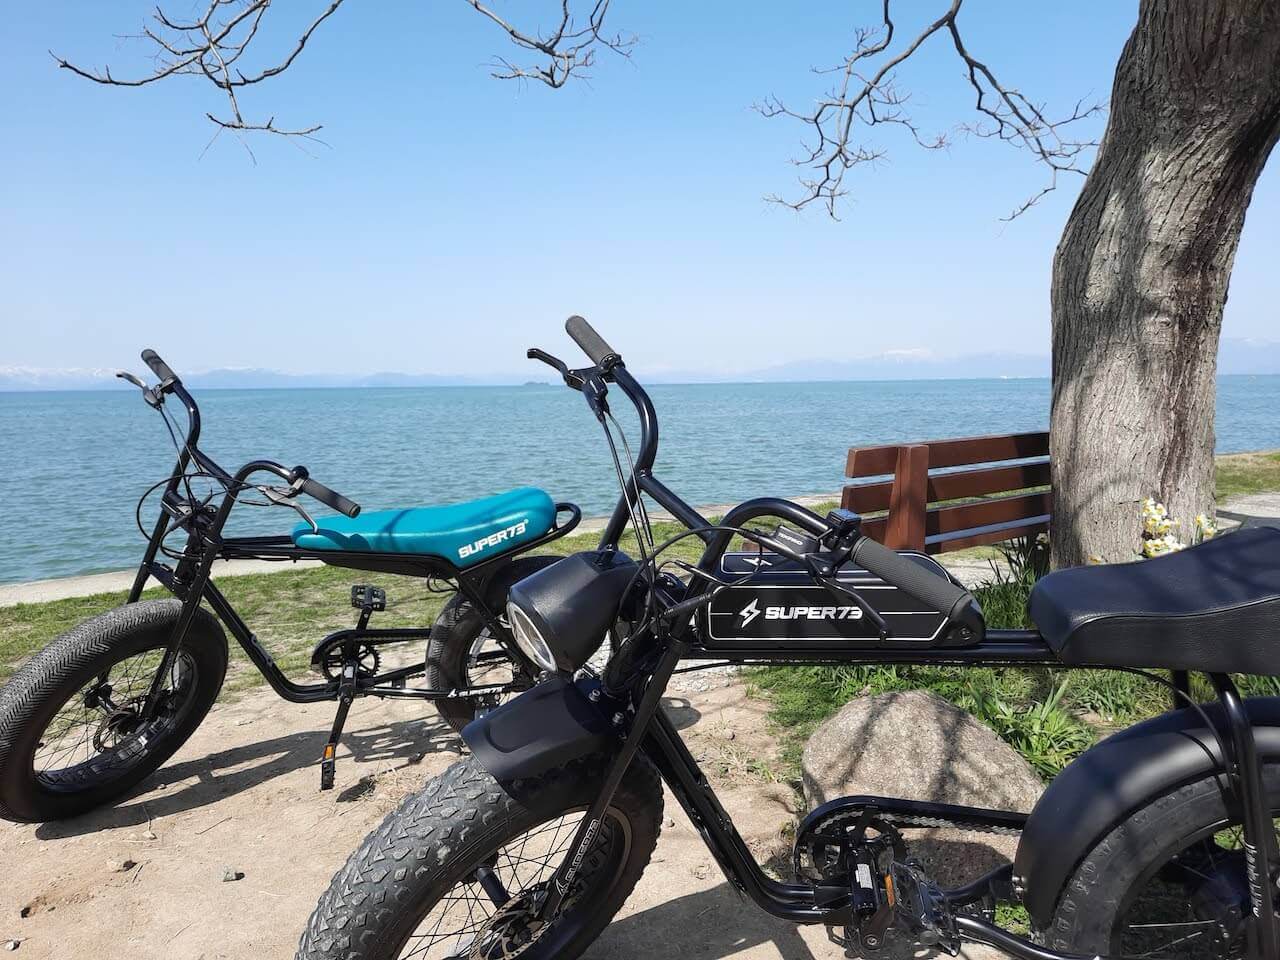 ビワイチ-Super73-あのベンチ-電動自転車-Ebike-サイクリング-琵琶湖